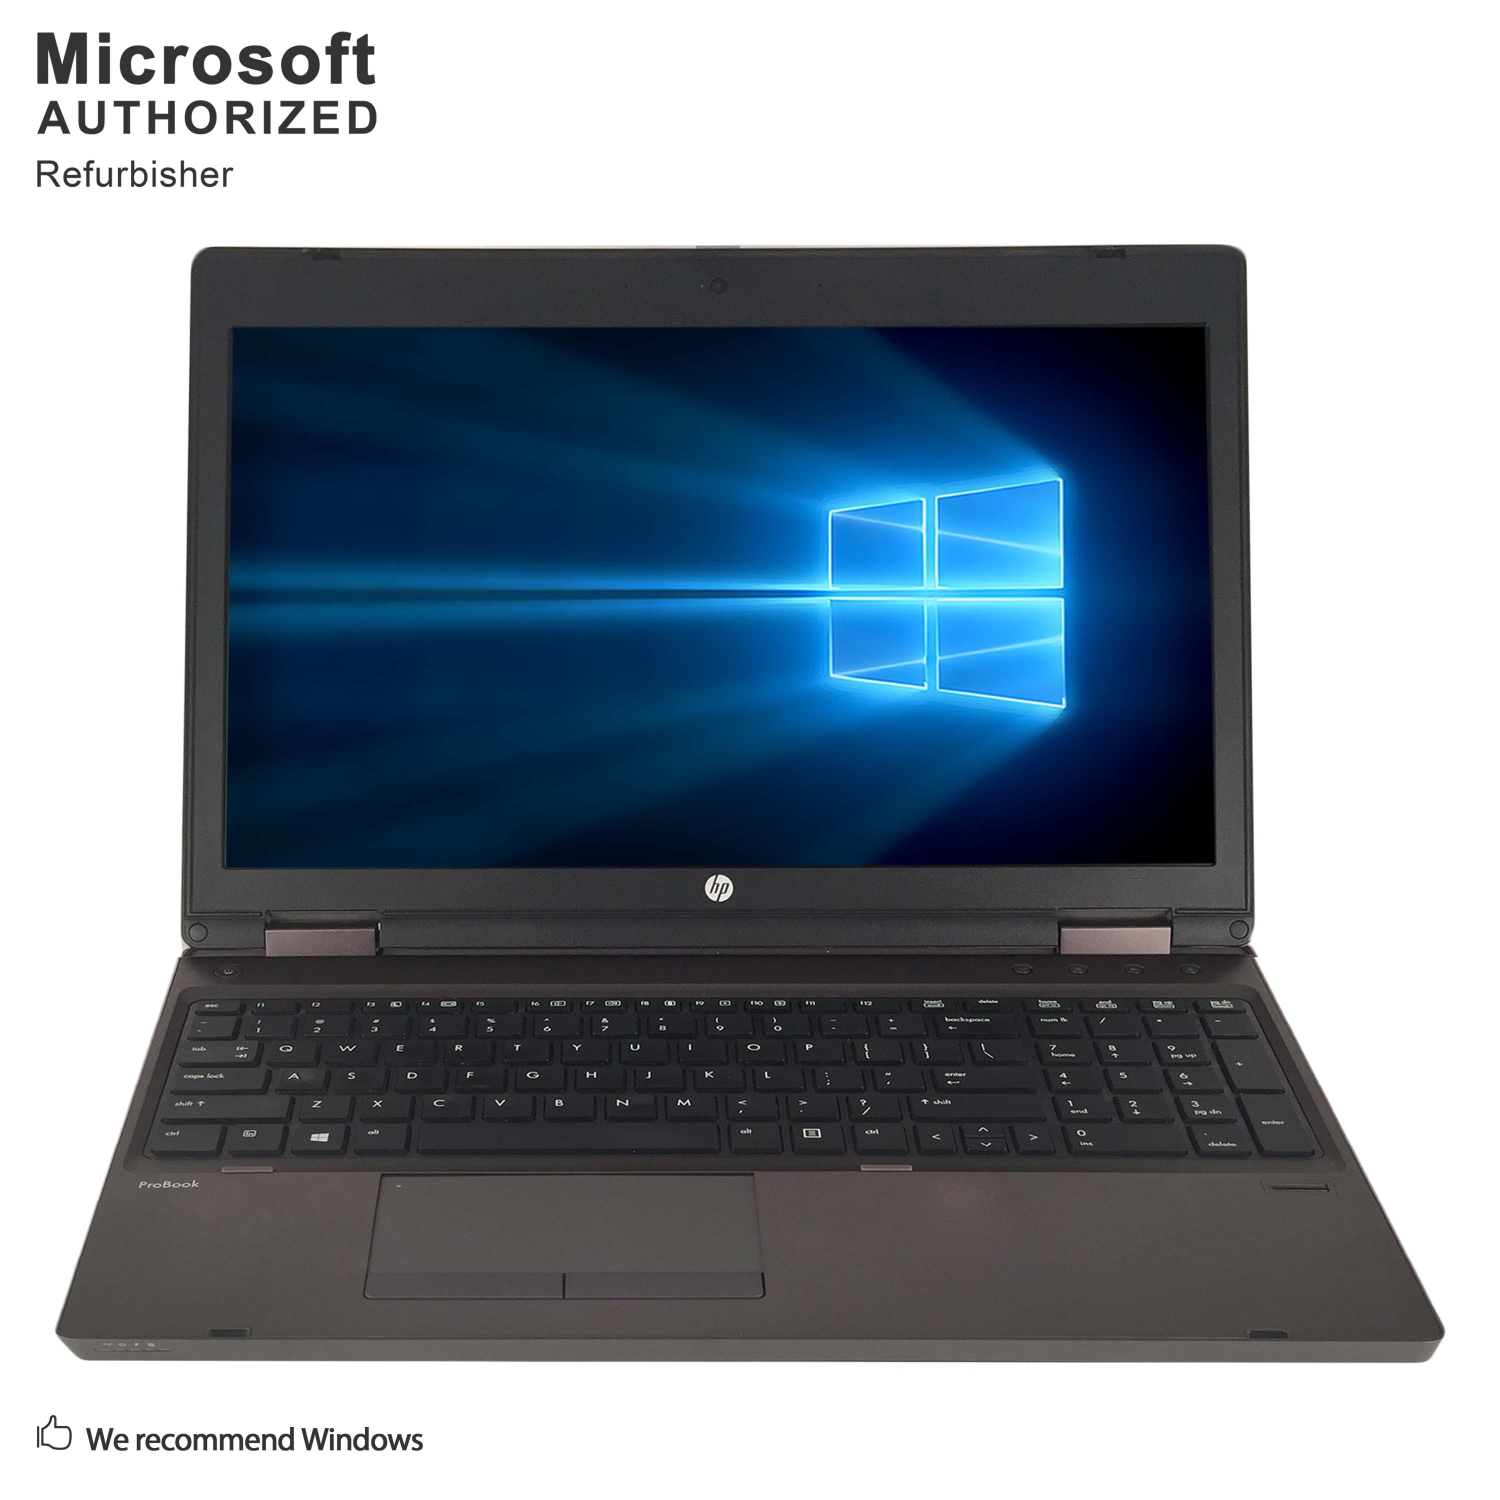 Refurbished (Excellent) - HP ProBook 6570b 15.6", Grade A, Intel CI7-3520M 2.9G, 8G DDR3, 1T, DVD, WiFi, W10H64, 1 Year Warranty (EN/FR)